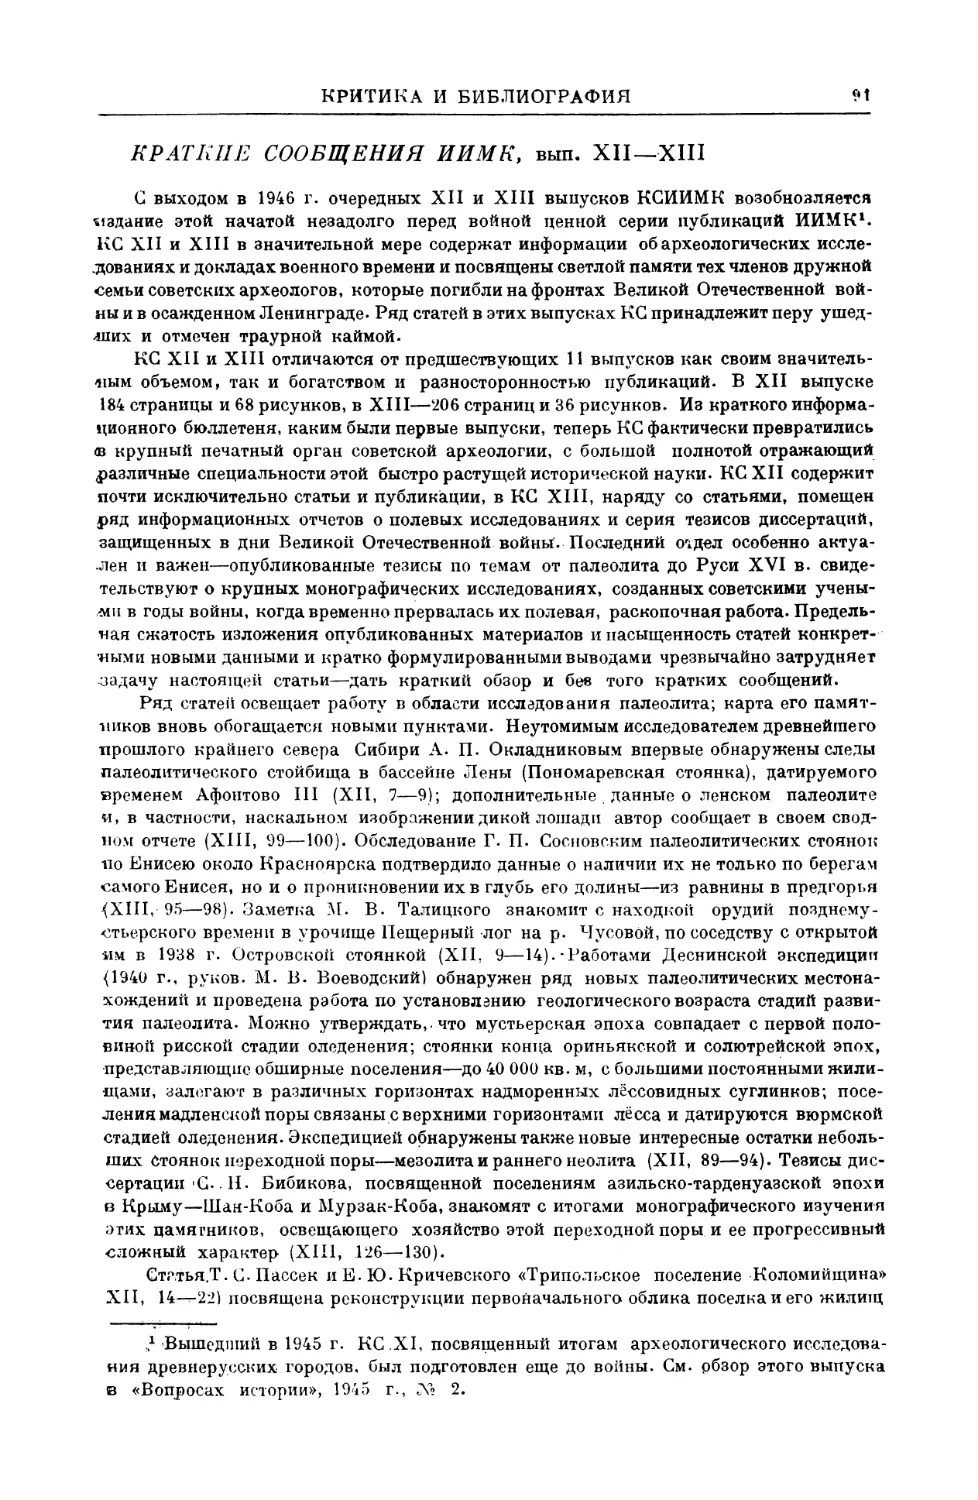 Н. Воронин — Краткие сообщения ИИМК, вып. XII—XIII